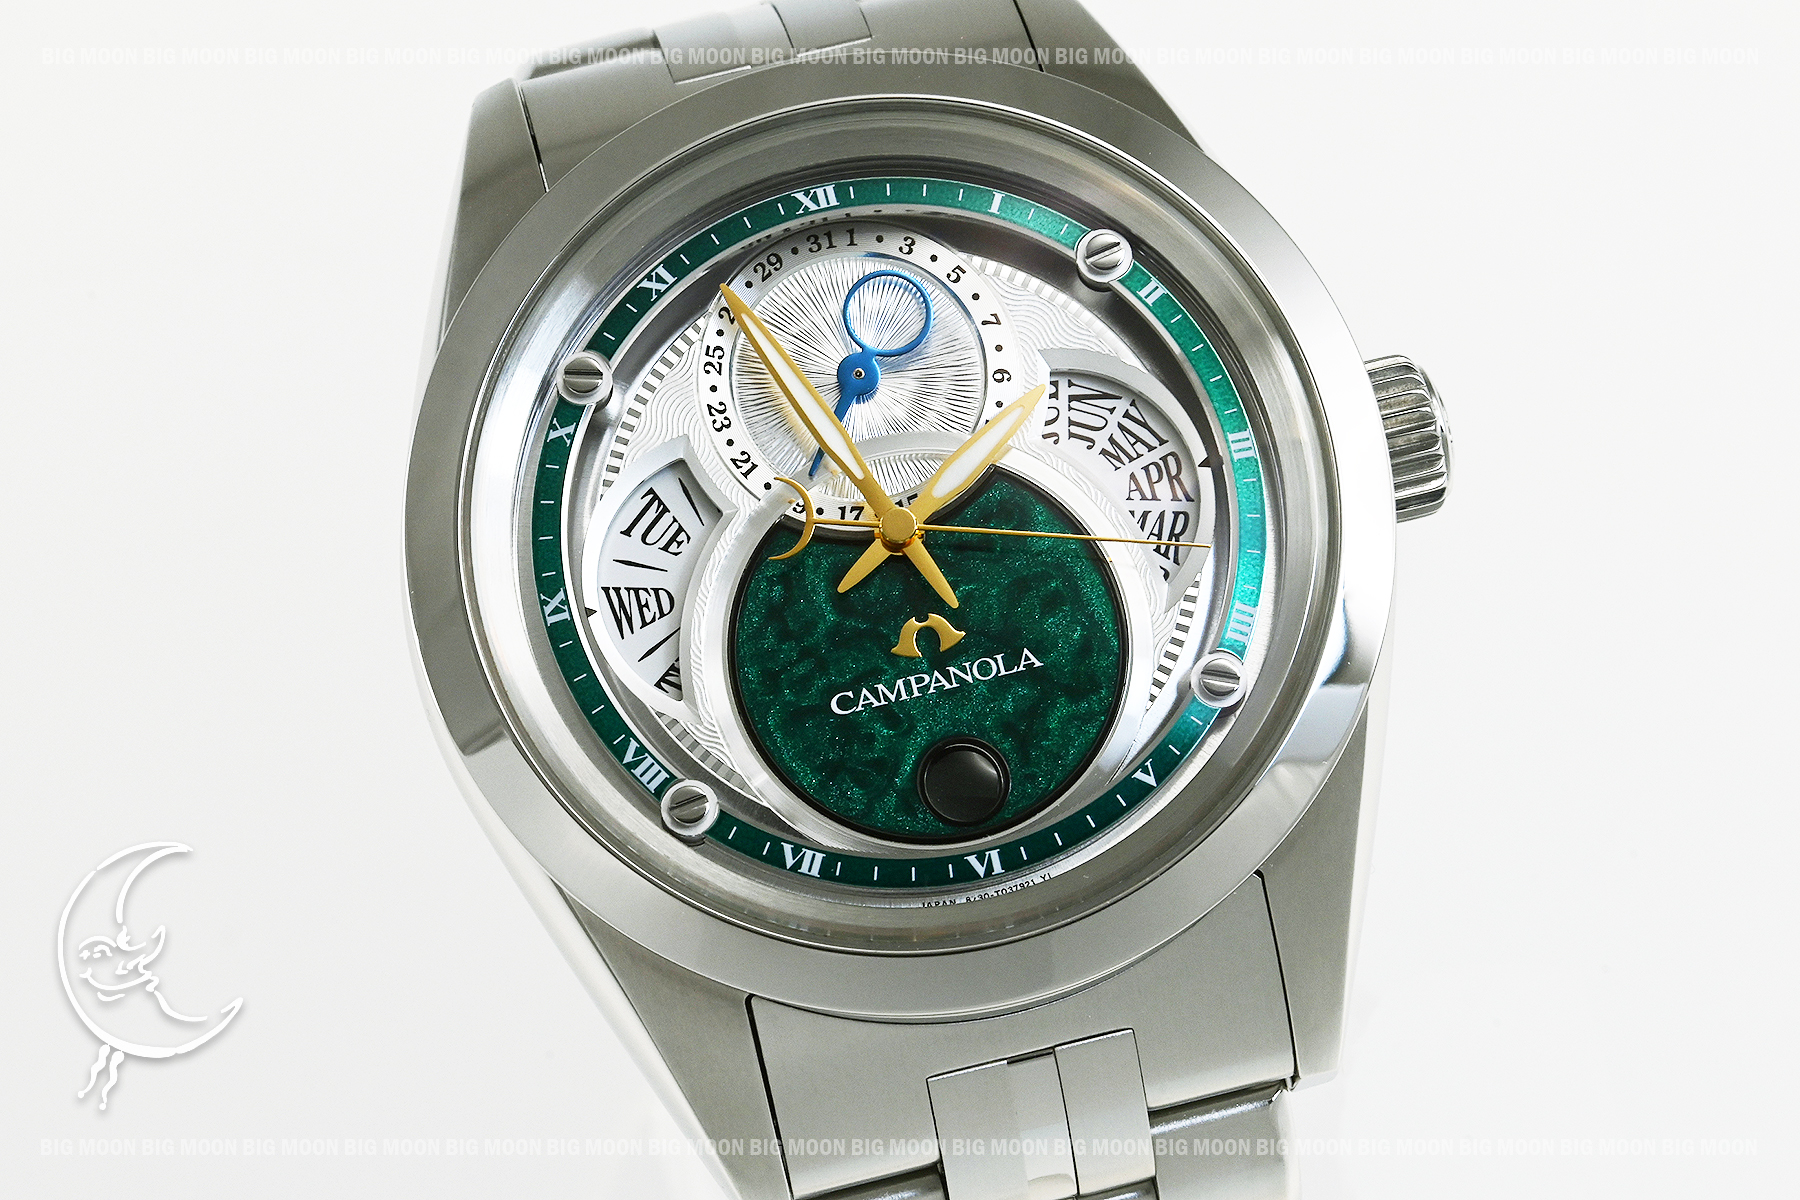 シチズン CITIZEN 腕時計 メンズ BU0040-57L カンパノラ エコ・ドライブ リングソーラー CAMPANOLA ECO DRIVE RING SOLAR エコ・ドライブ（CAL.8730） ブルー（漆塗り）/ホワイトxシルバー アナログ表示